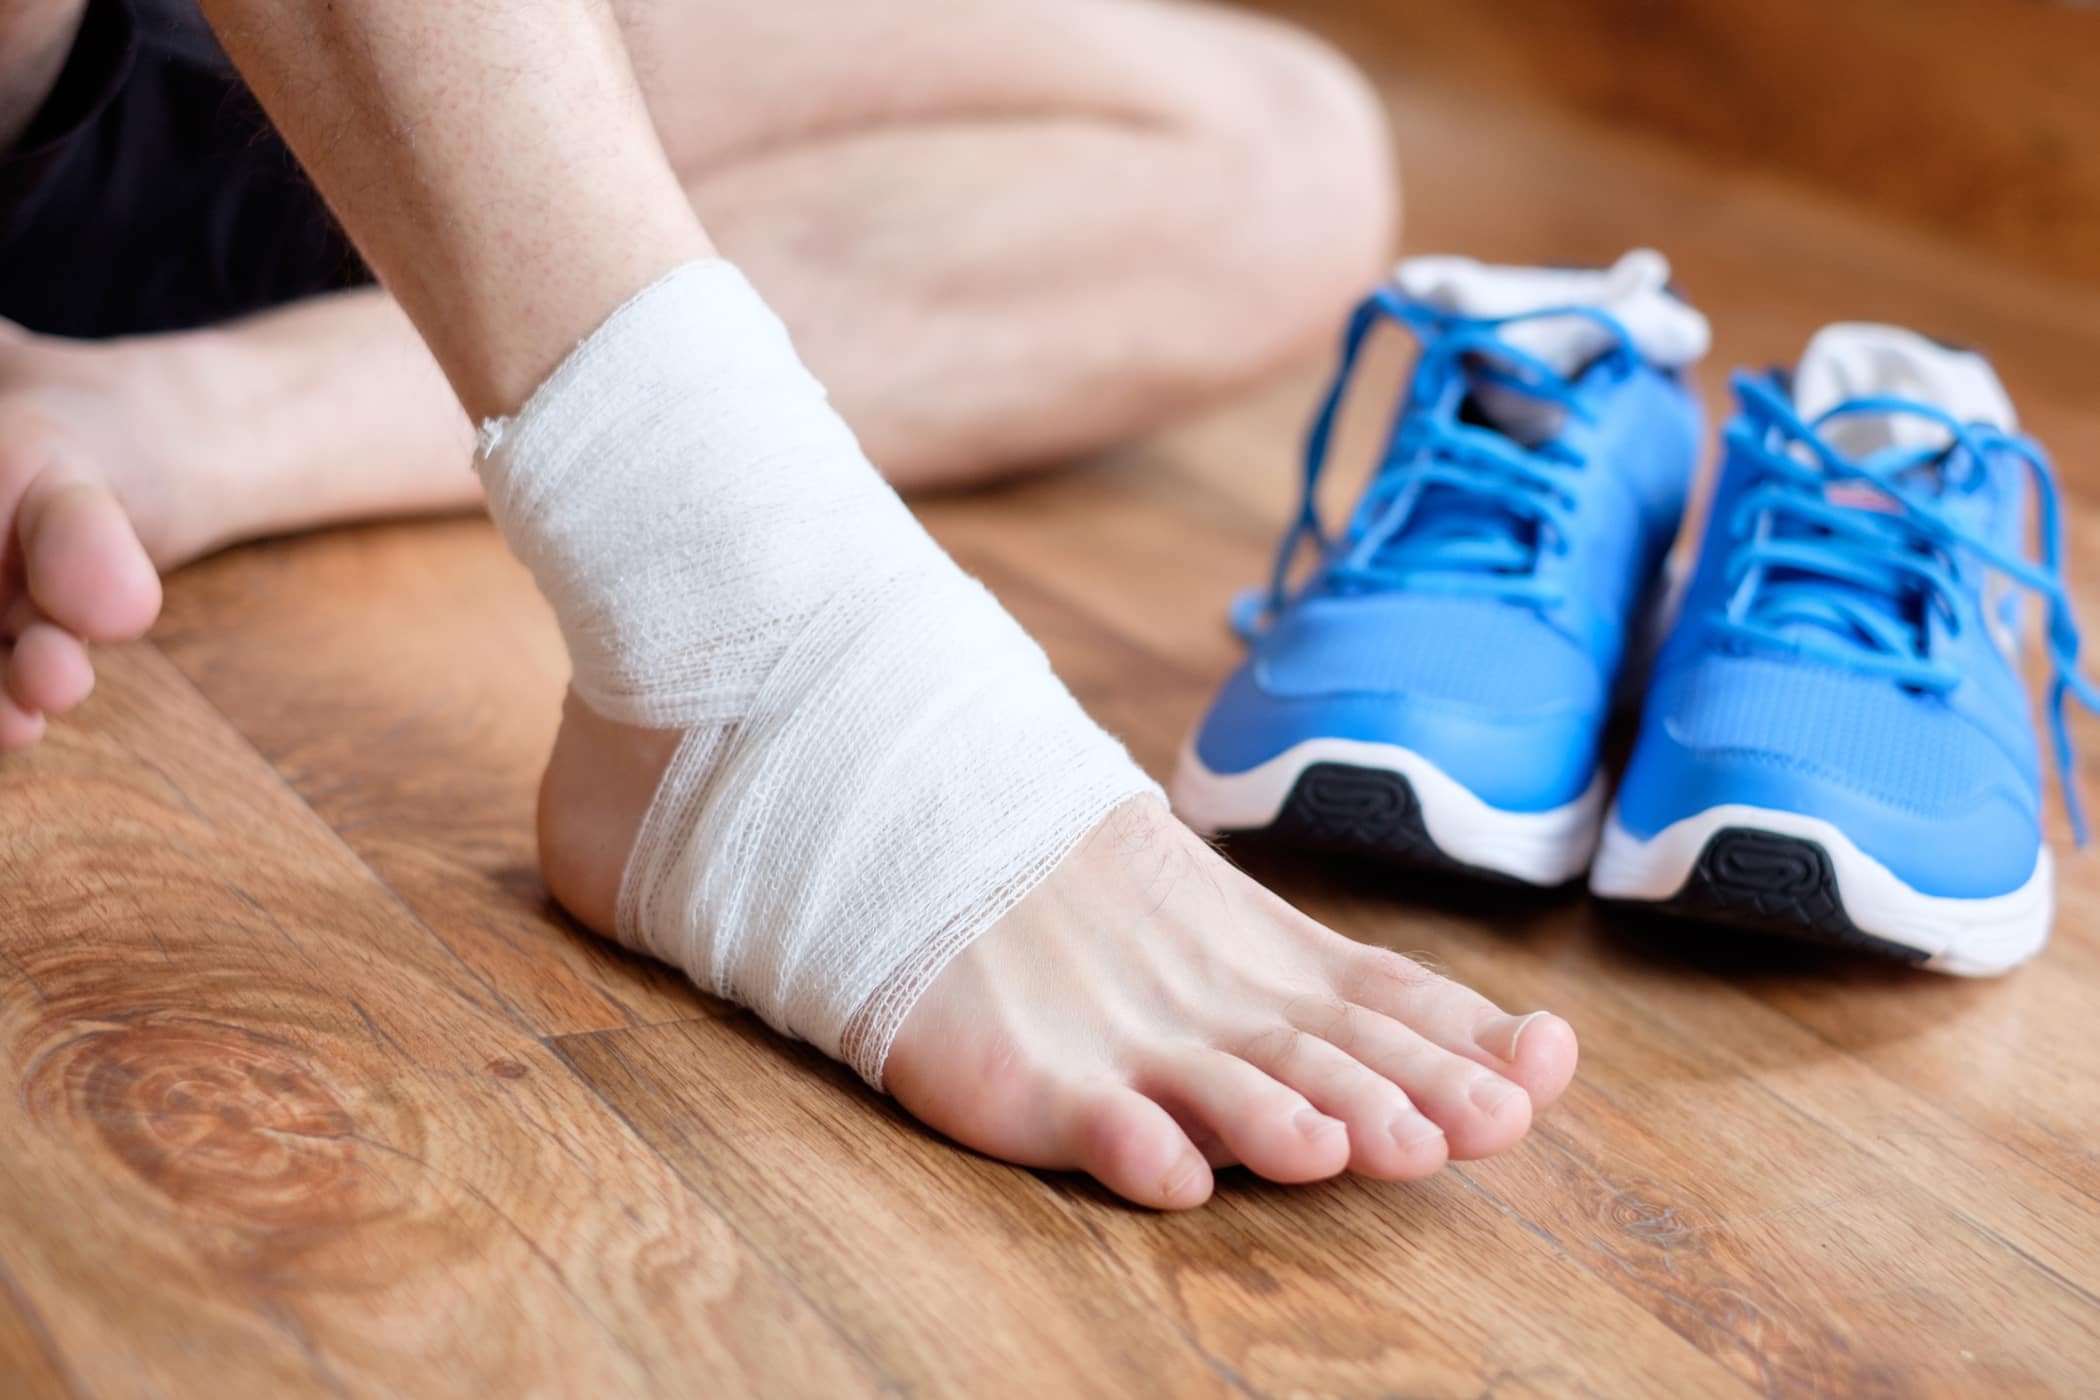 Lật sơ mi cổ chân - Cách phòng tránh và chữa trị